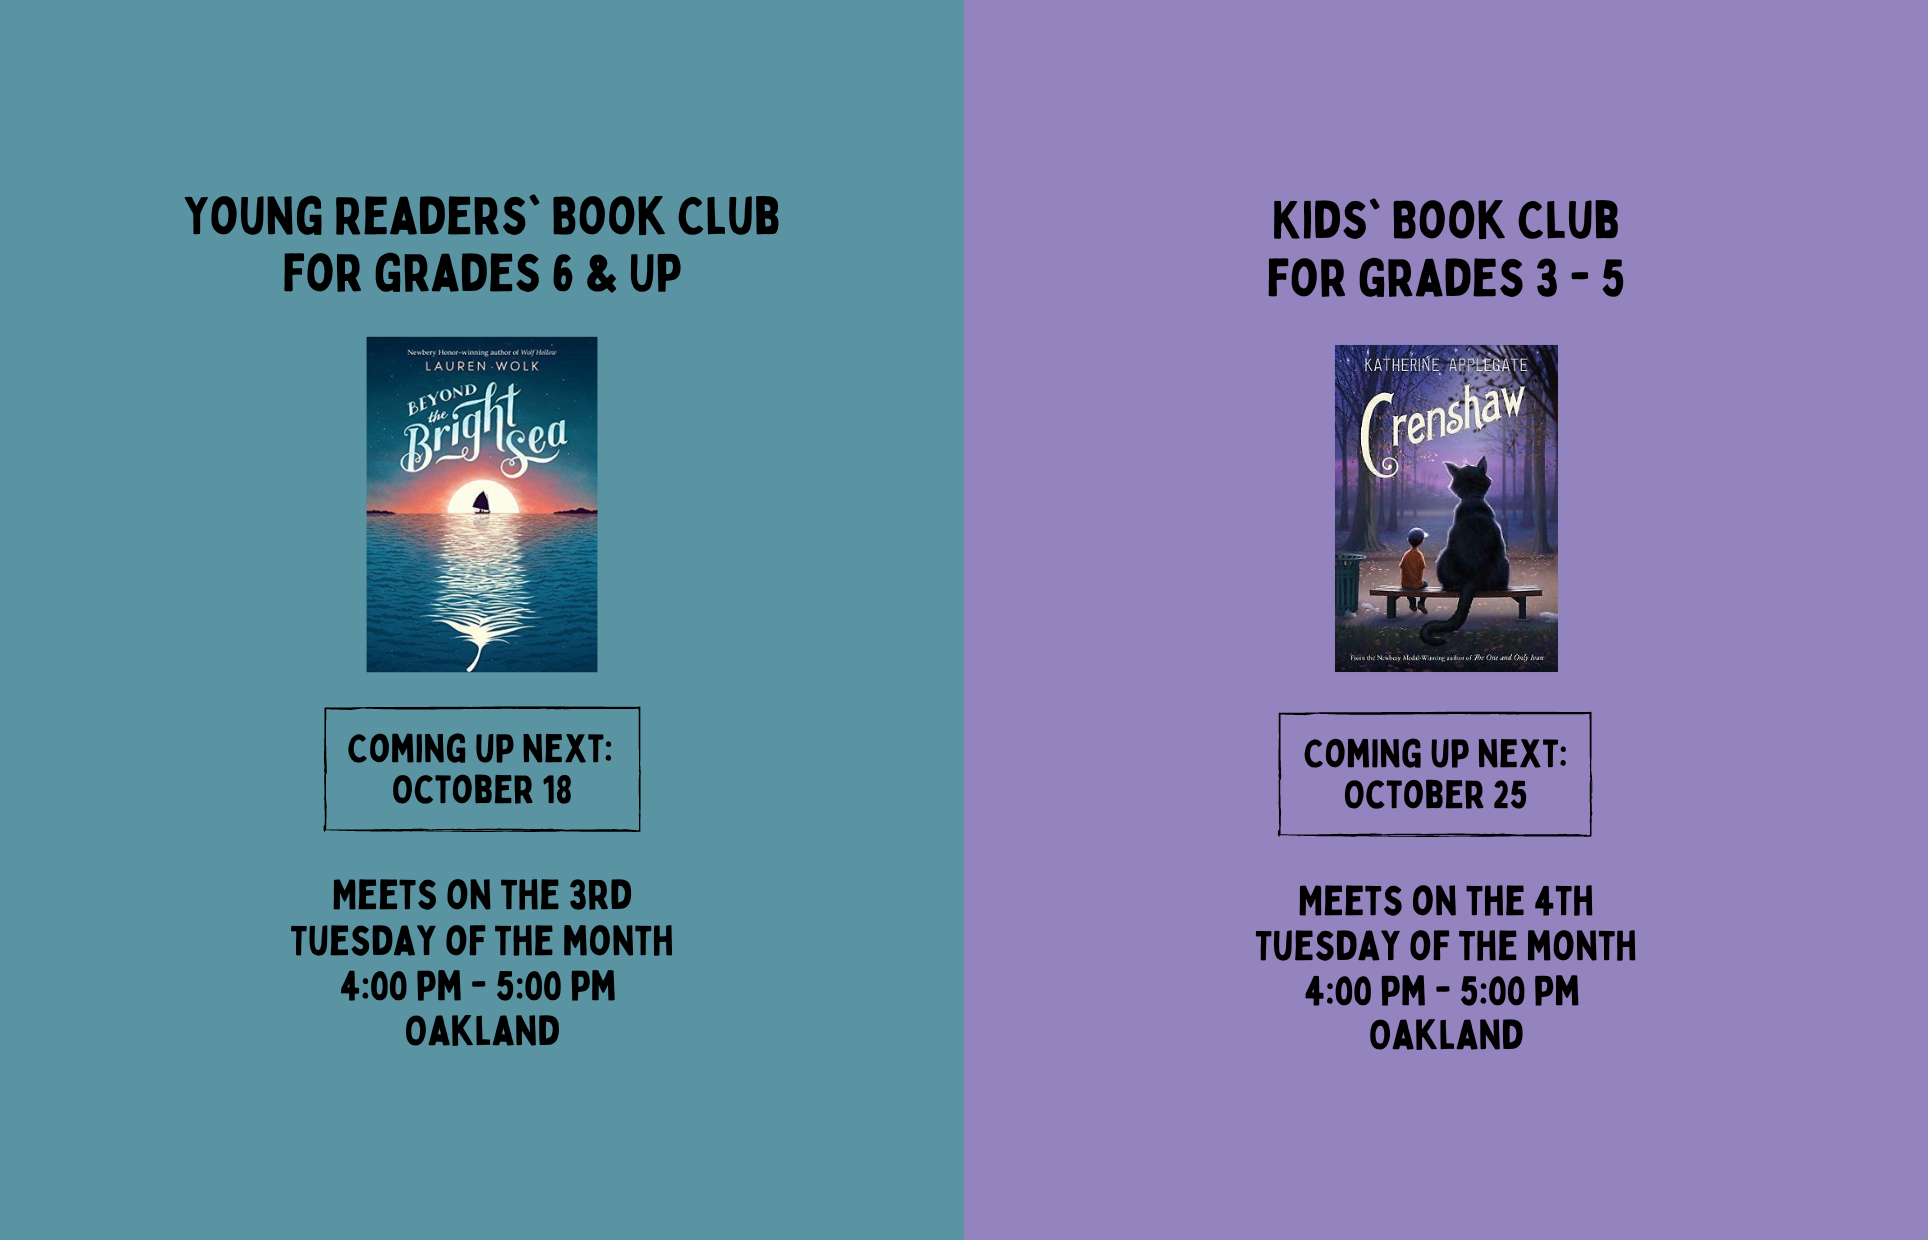 October Book Club